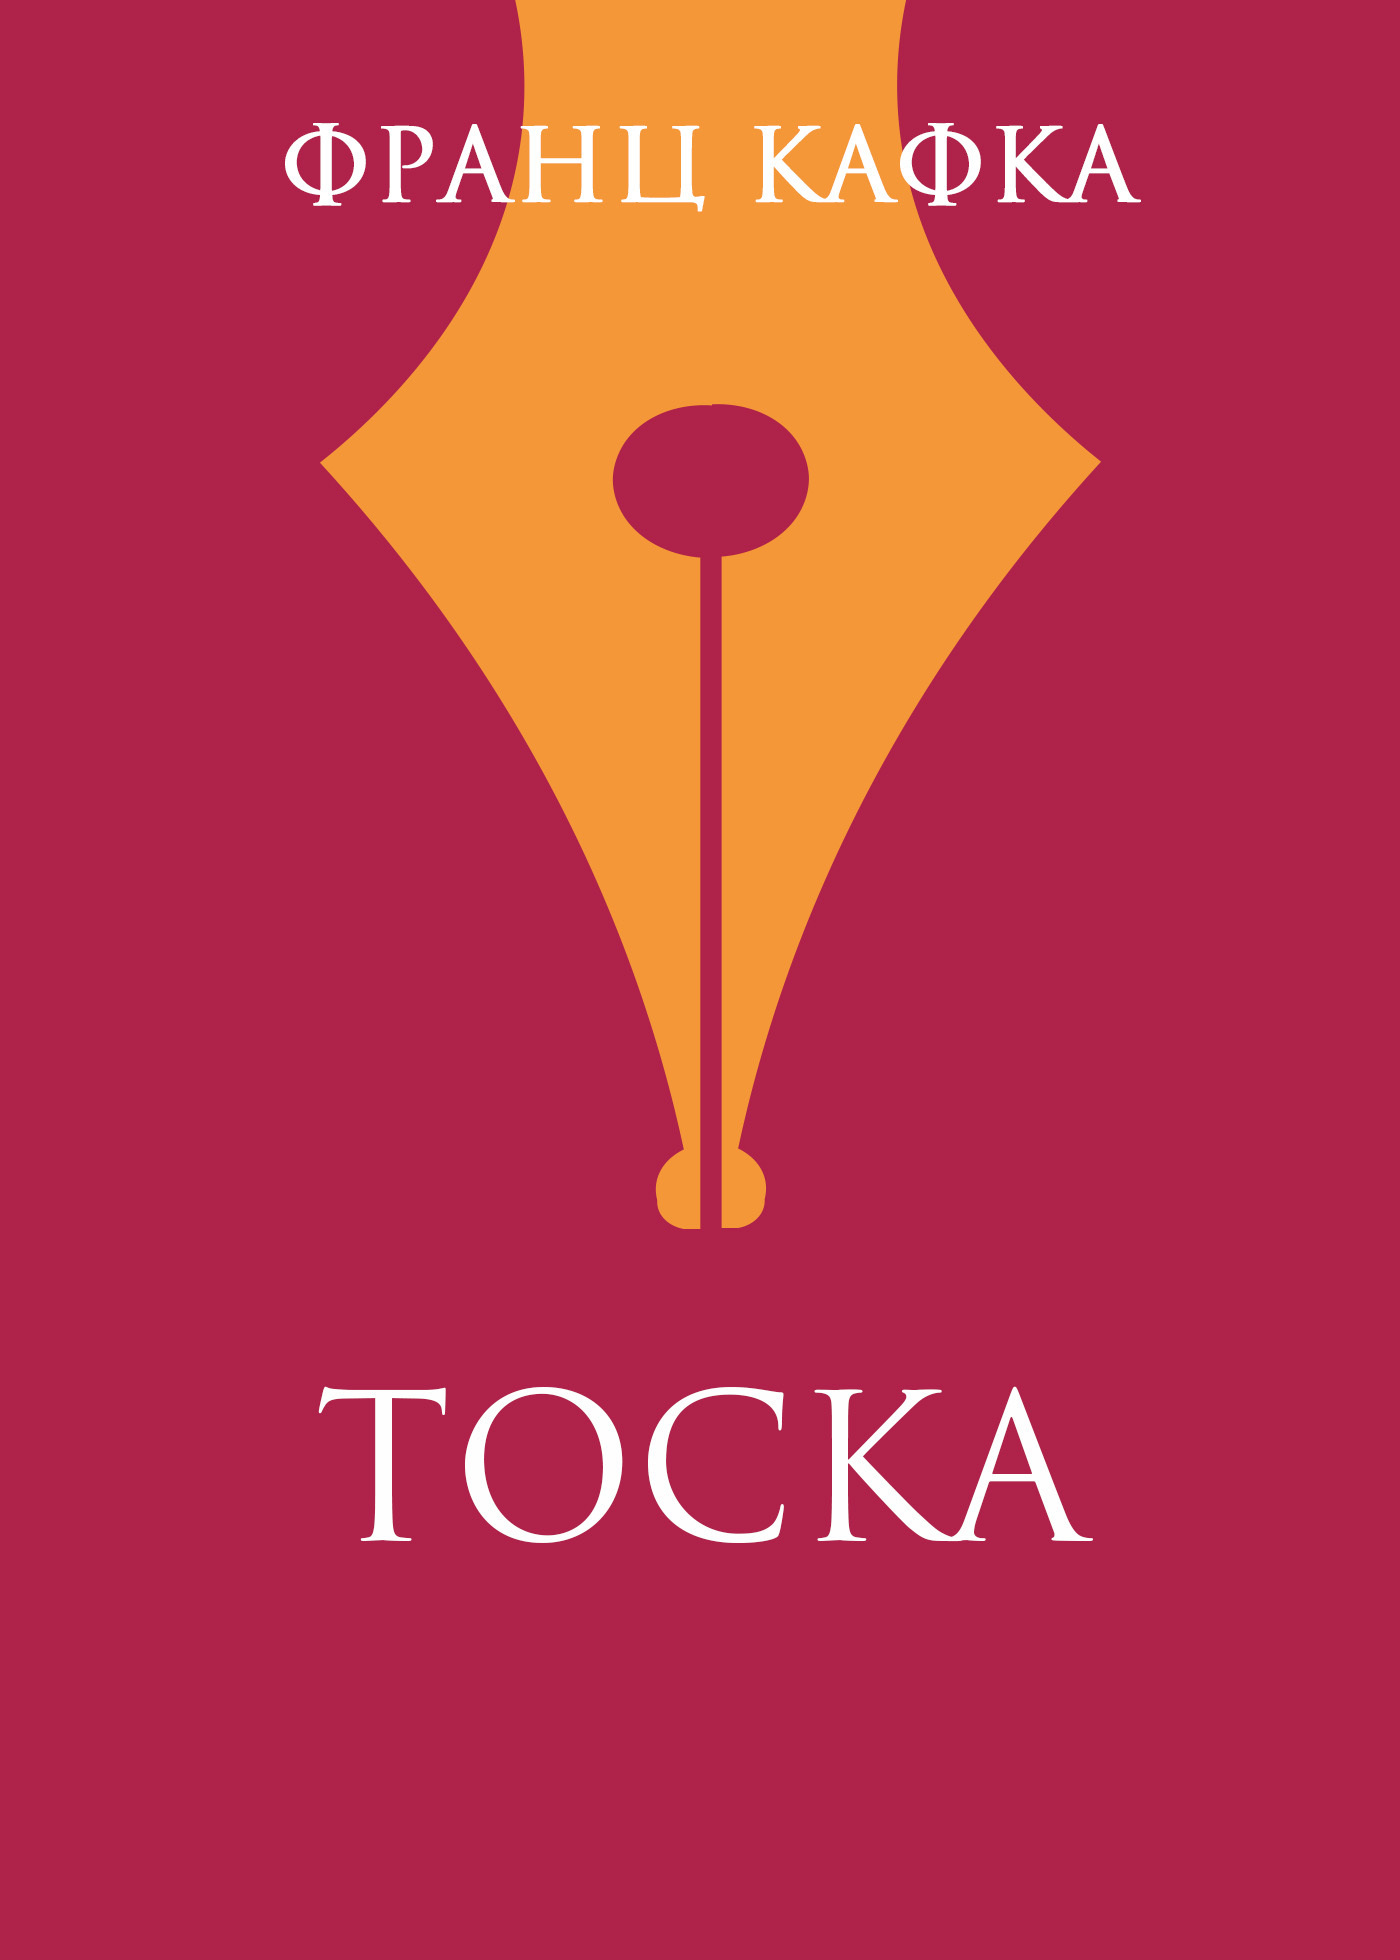 Книга Тоска из серии , созданная Франц Кафка, может относится к жанру Зарубежная классика, Литература 20 века. Стоимость электронной книги Тоска с идентификатором 160586 составляет 19.99 руб.